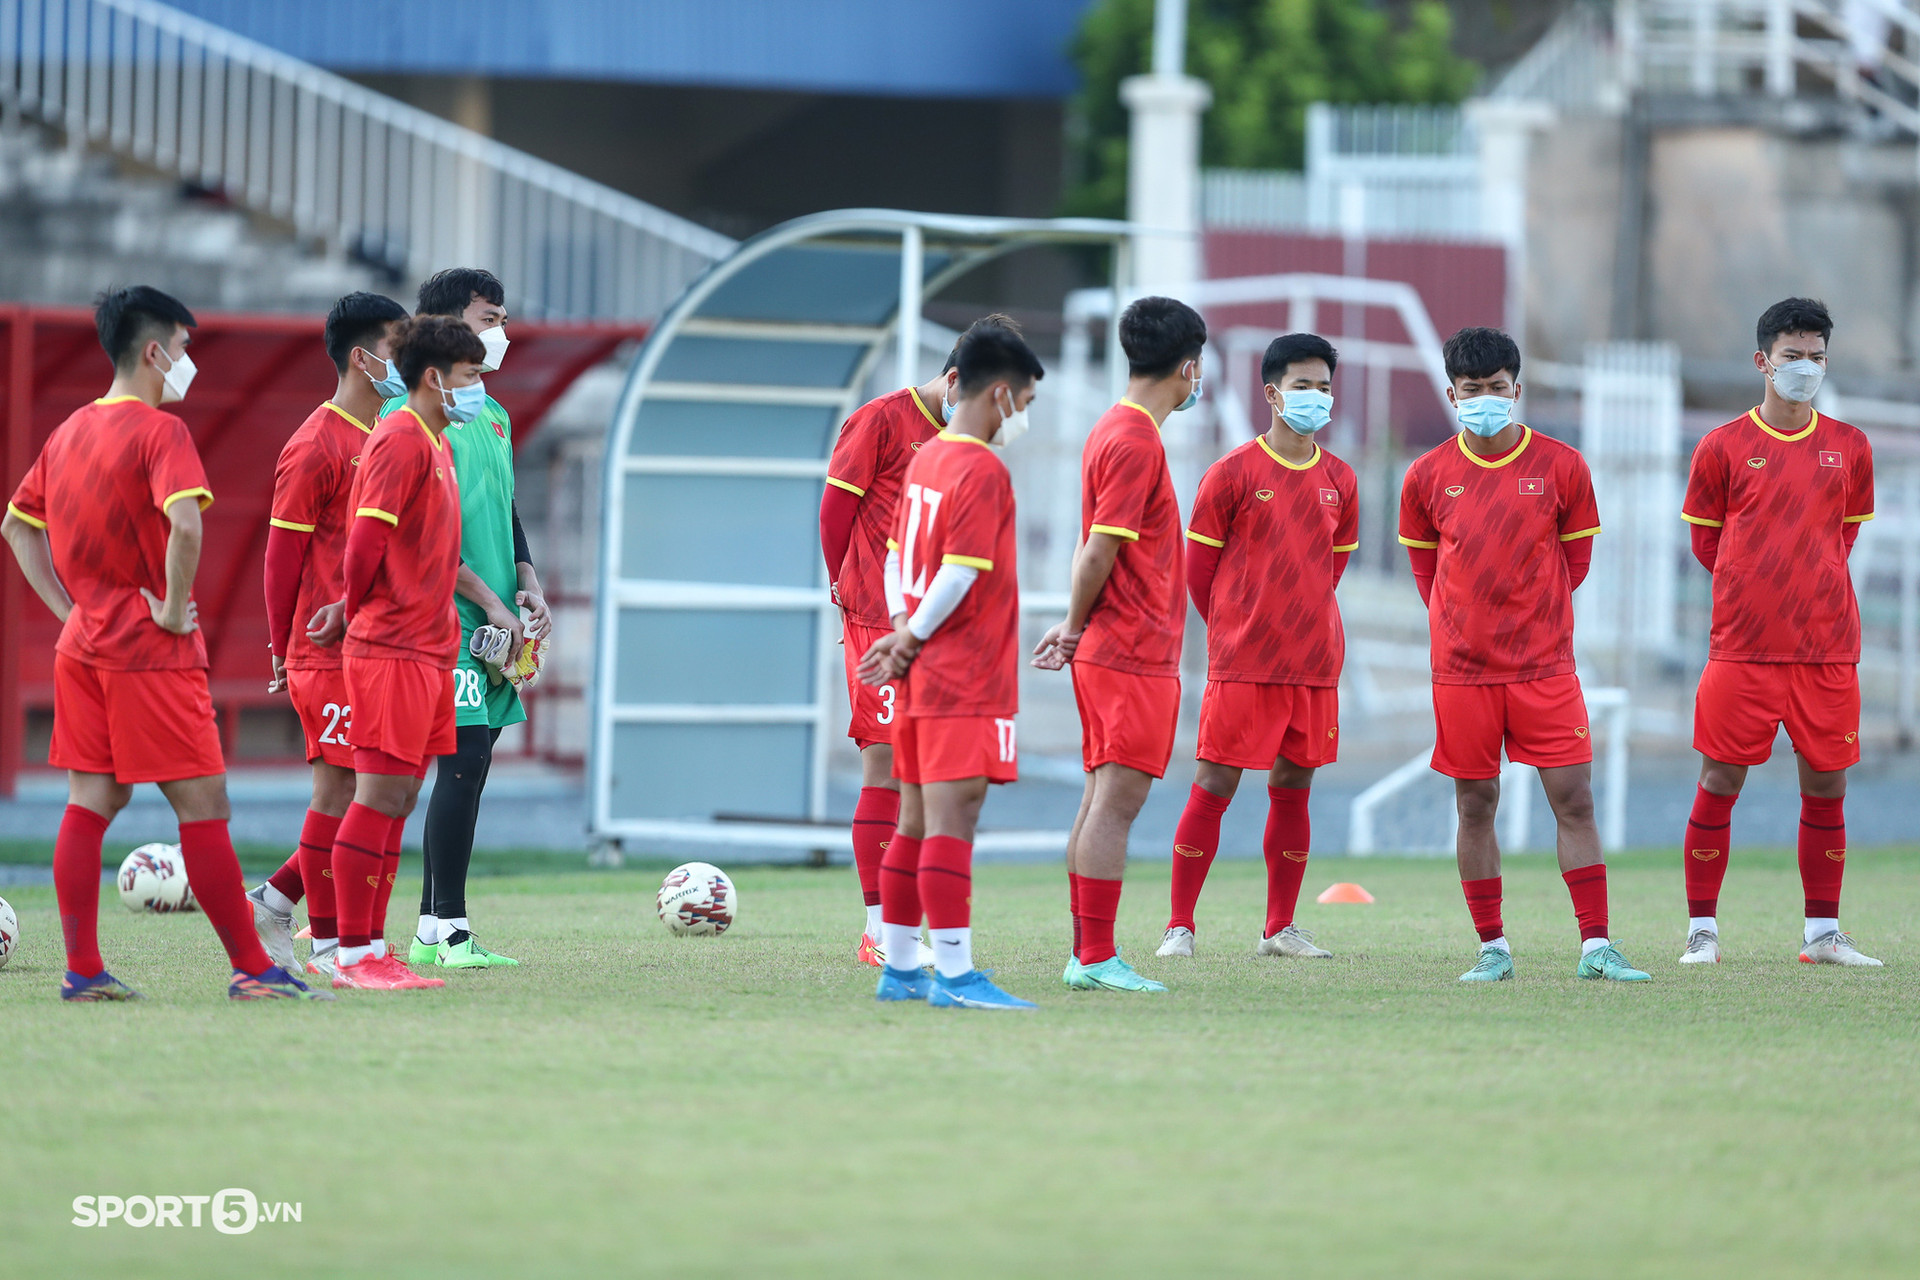 Nhiều cầu thủ trên hàng công U23 Việt Nam vắng mặt trong buổi tập trước trận bán kết - Ảnh 2.